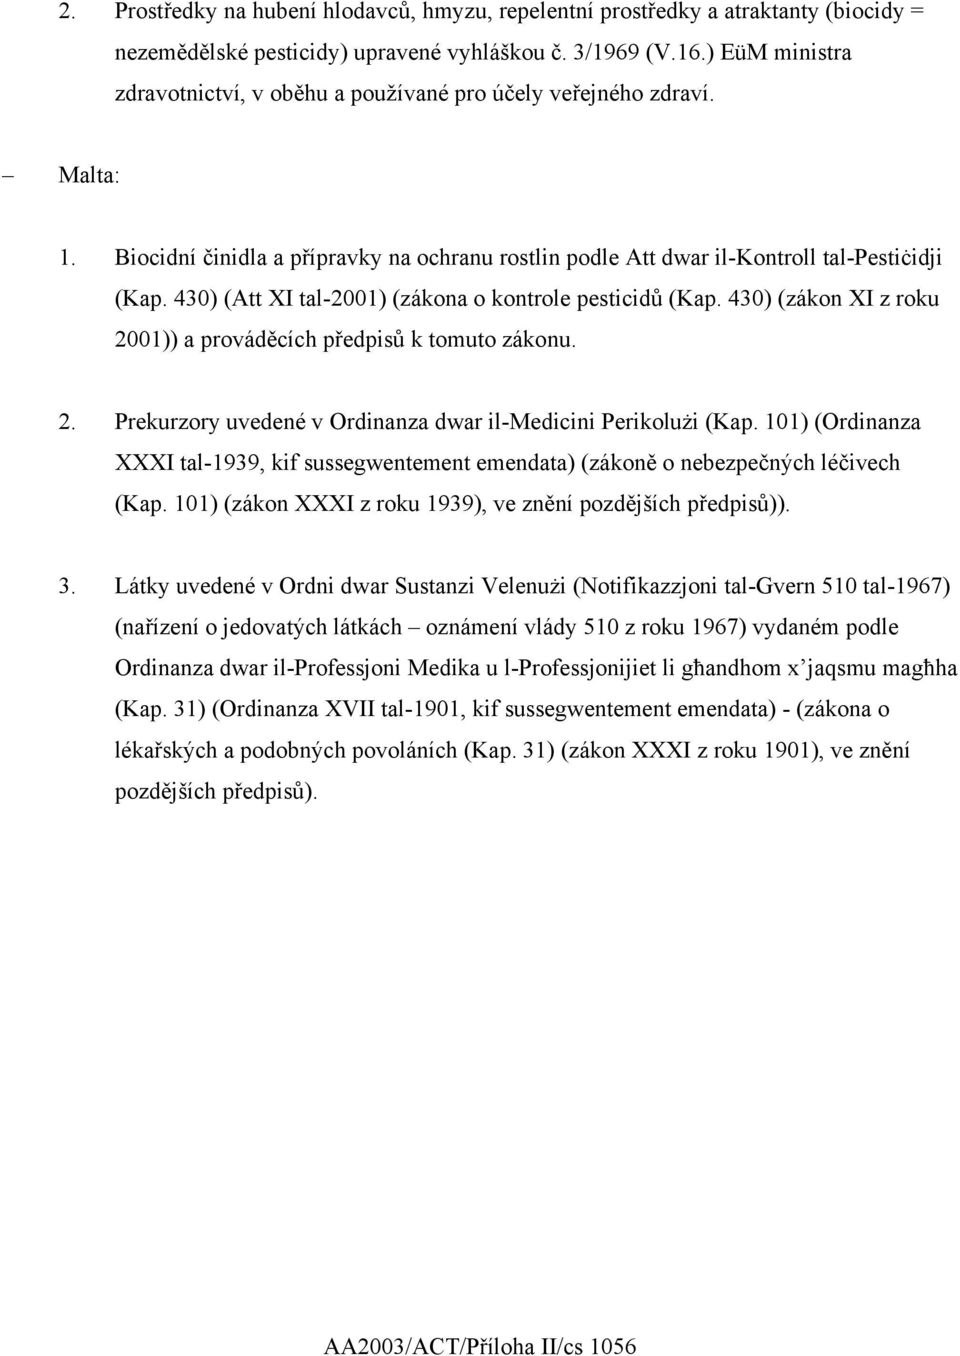 430) (Att XI tal-2001) (zákona o kontrole pesticidů (Kap. 430) (zákon XI z roku 2001)) a prováděcích předpisů k tomuto zákonu. 2. Prekurzory uvedené v Ordinanza dwar il-medicini Perikolużi (Kap.